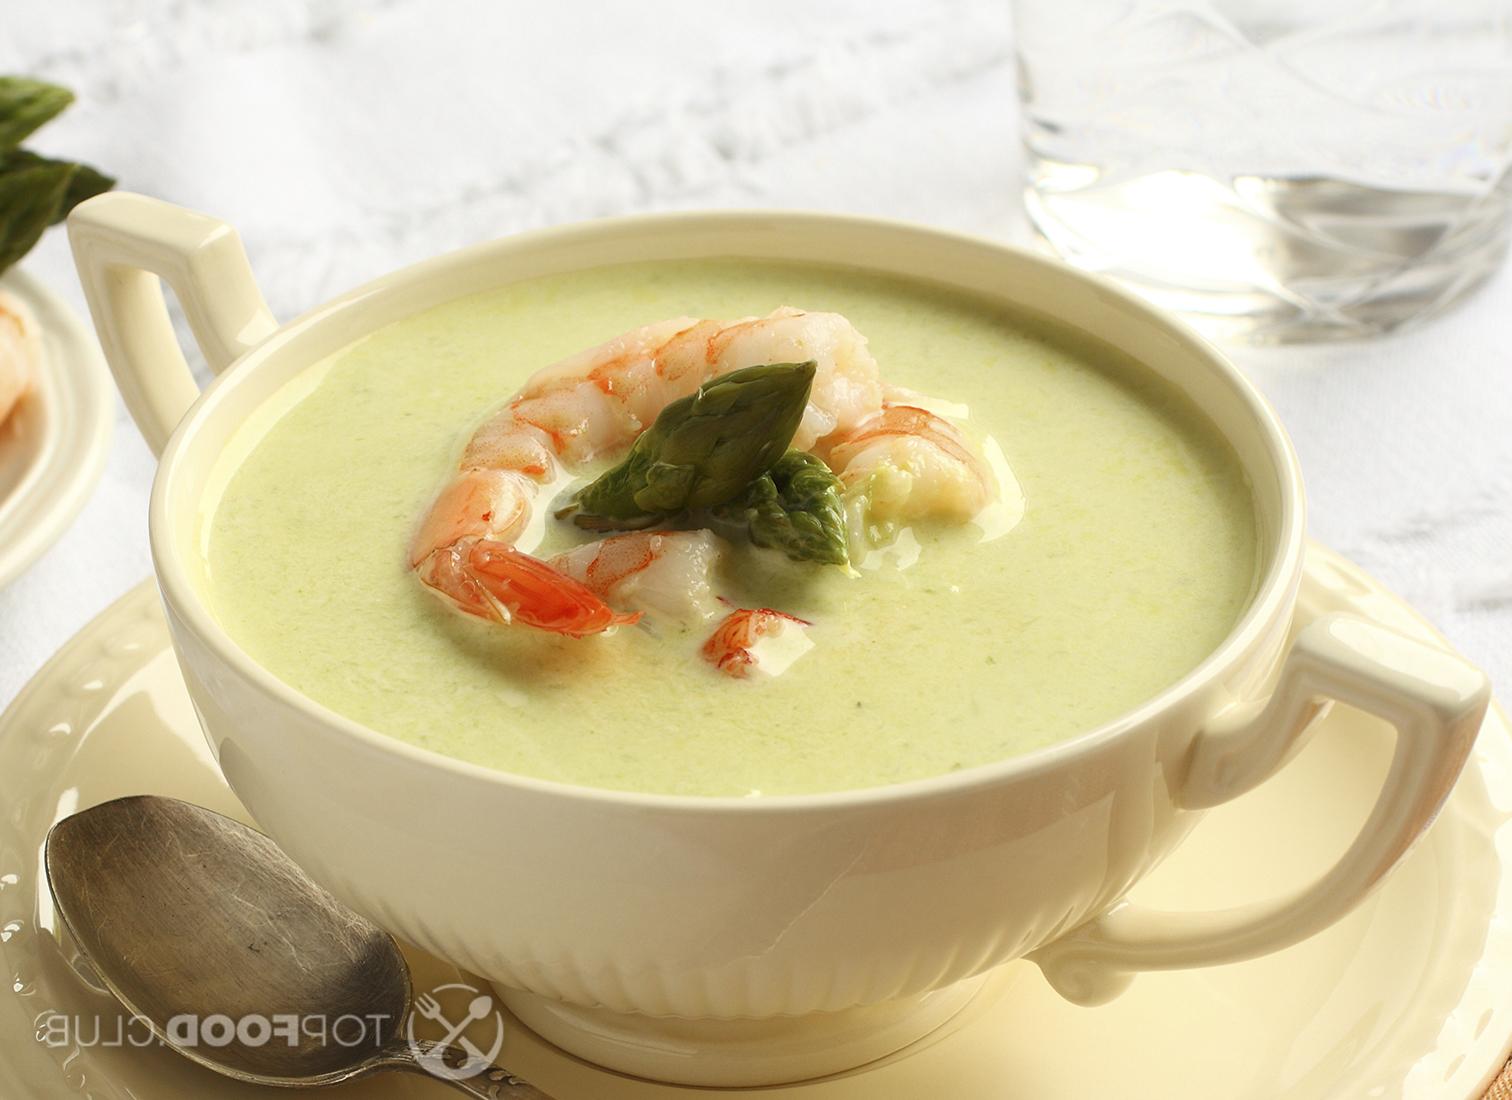 Крем-суп из батата с креветками!🍤 ⠀ Просили небанальный рецепт, вот, ловит | Instagram